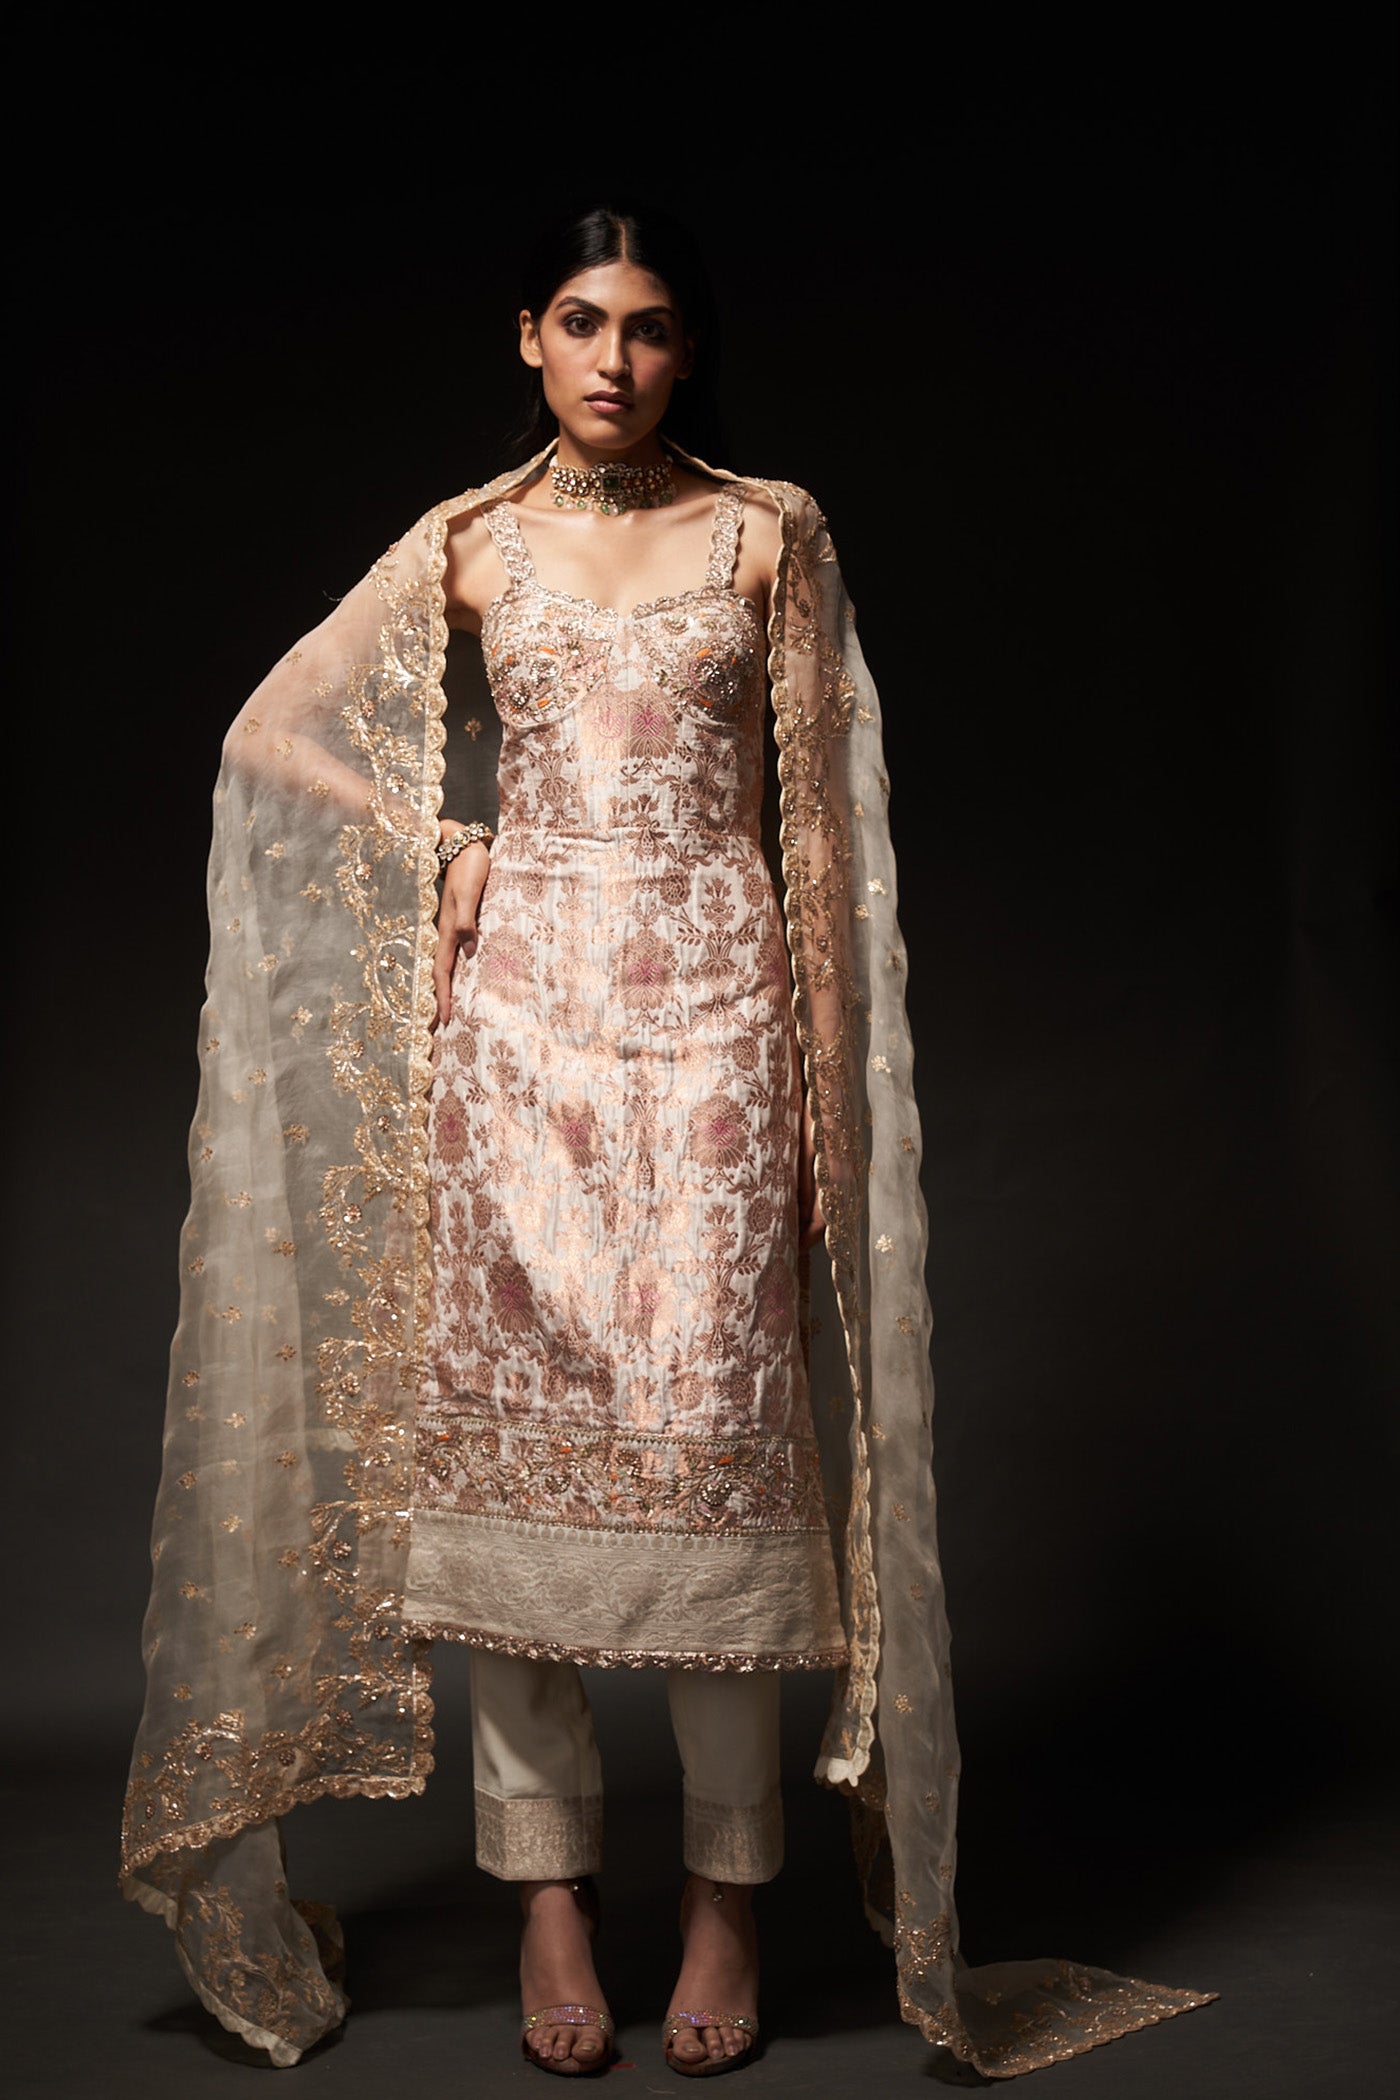 Kamala Dress - Cream Banarasi Dress